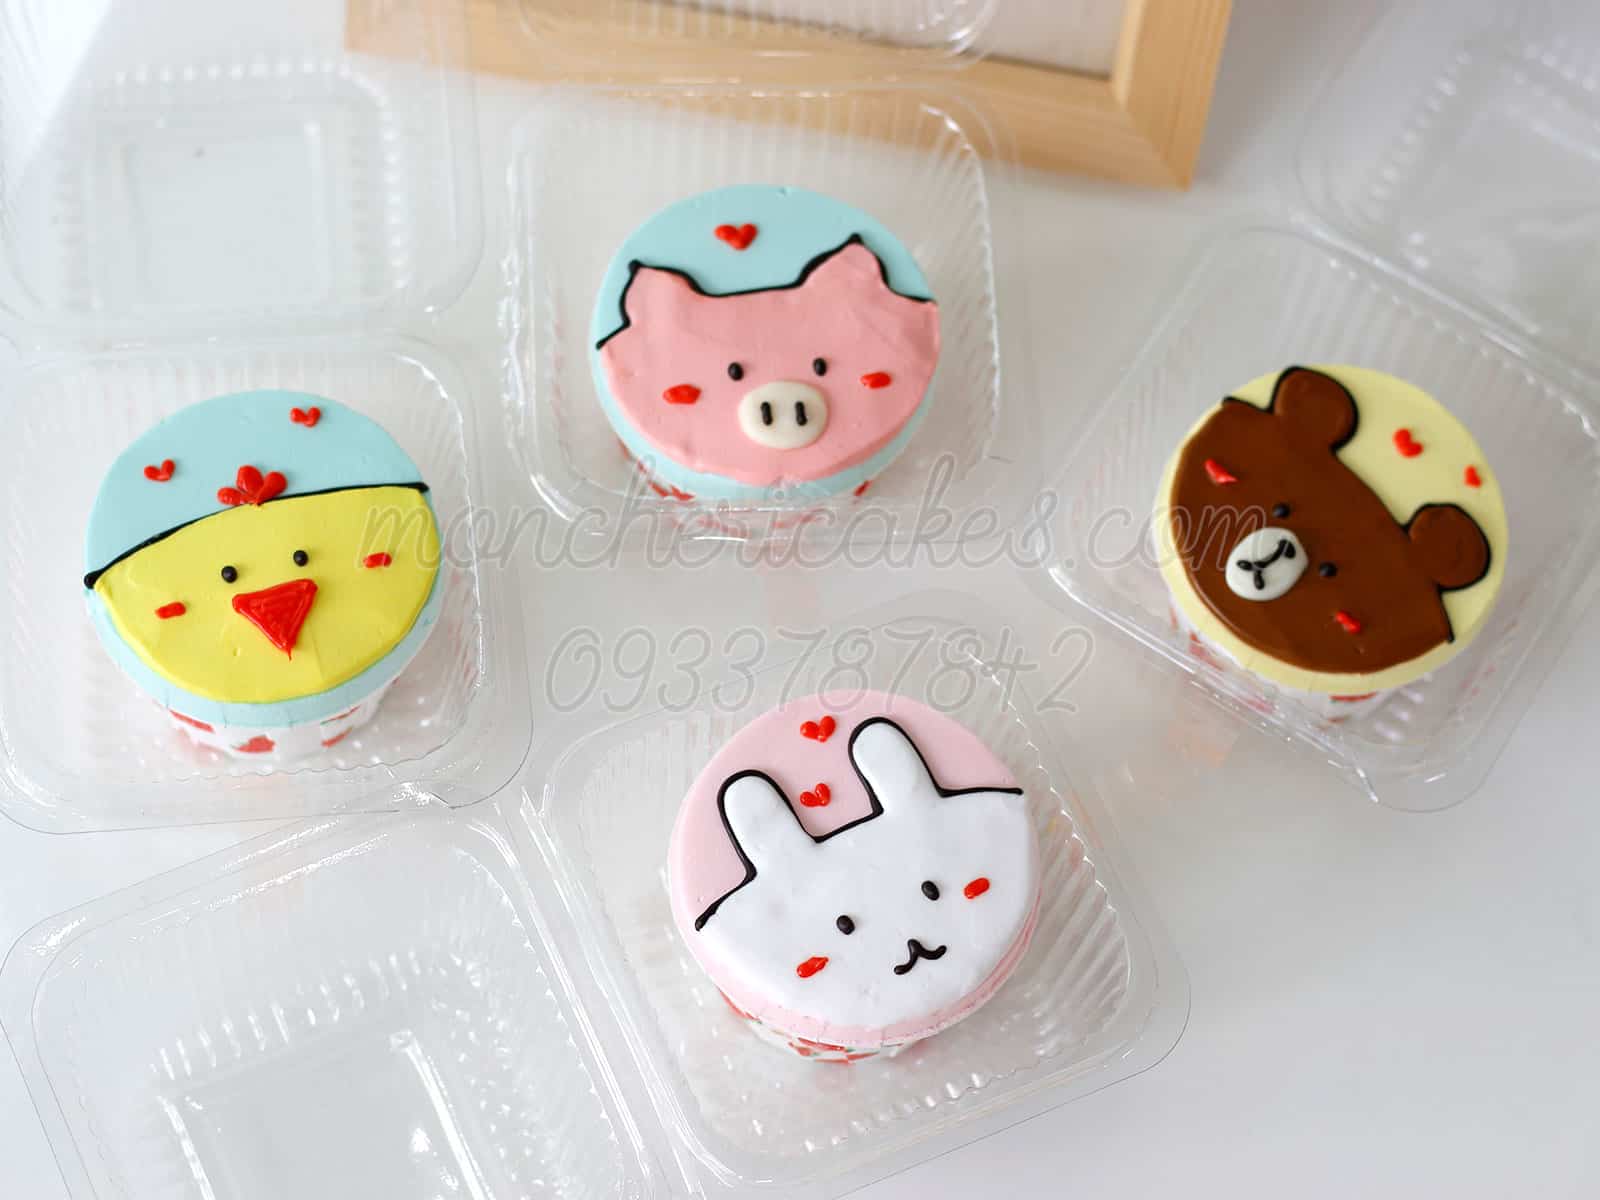 Cupcake Kavaii Dán Bản Vẽ  bánh png tải về  Miễn phí trong suốt Màu Hồng  png Tải về